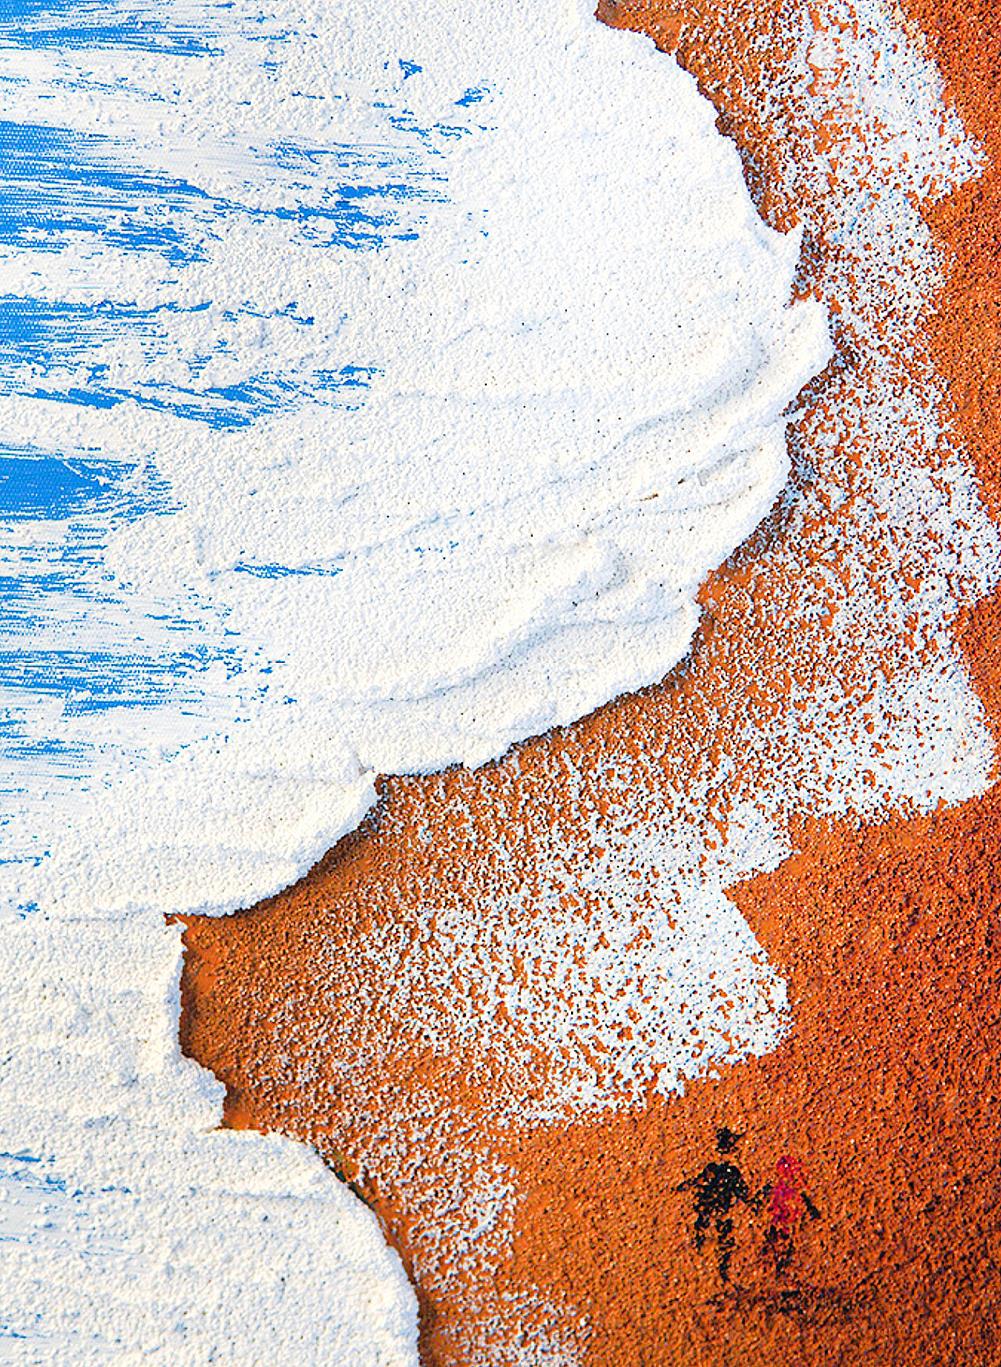 波砂子供 27 詳細ビーチアート壁装飾海岸油絵